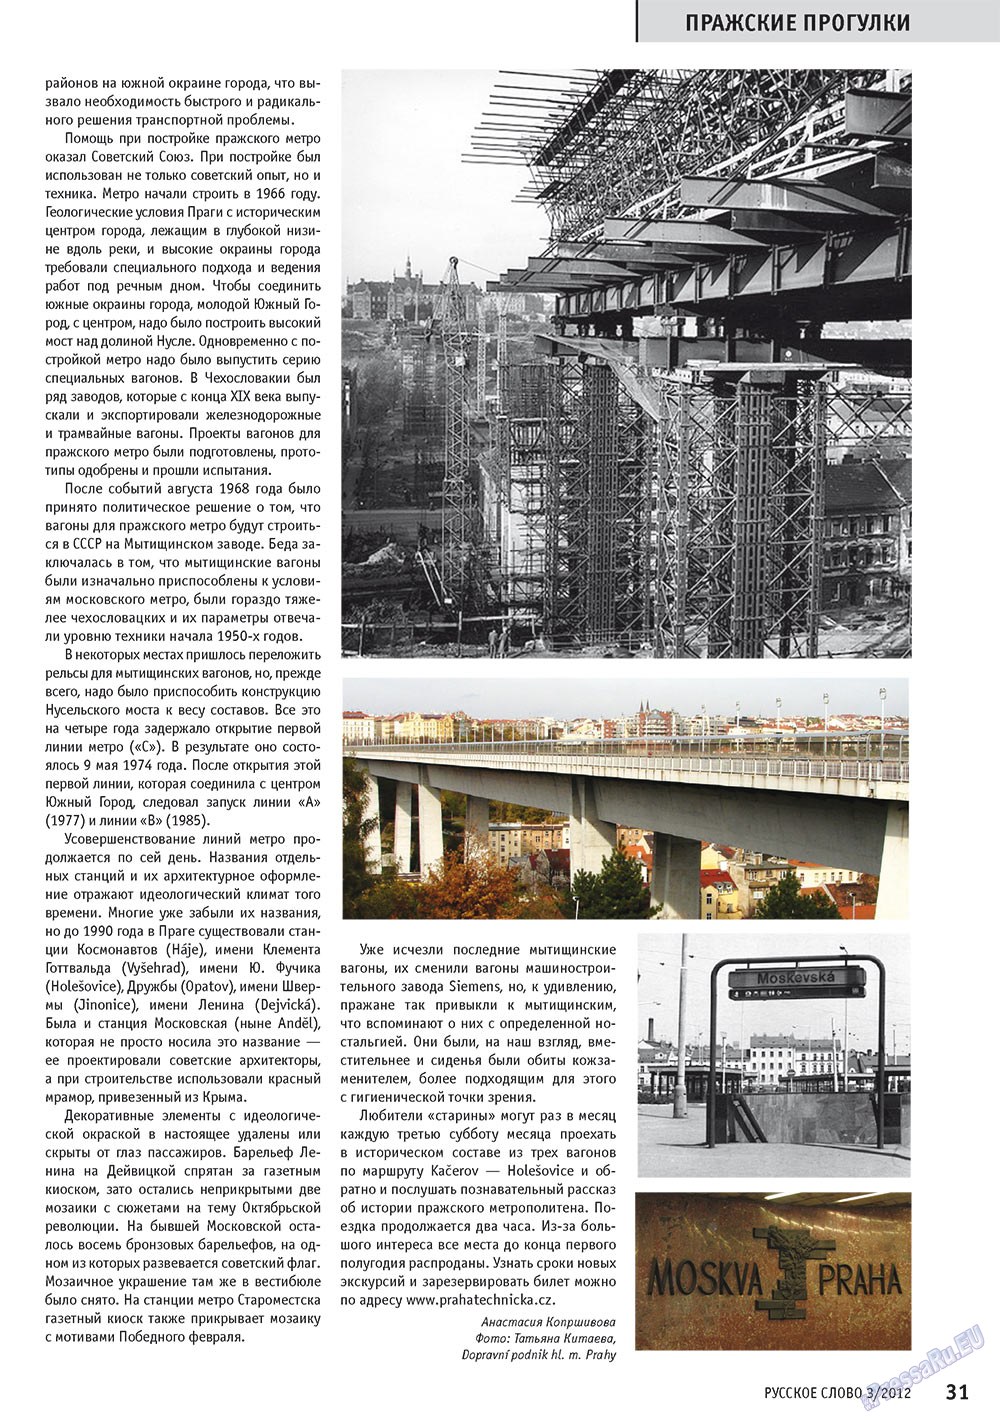 Русское слово (журнал). 2012 год, номер 3, стр. 32